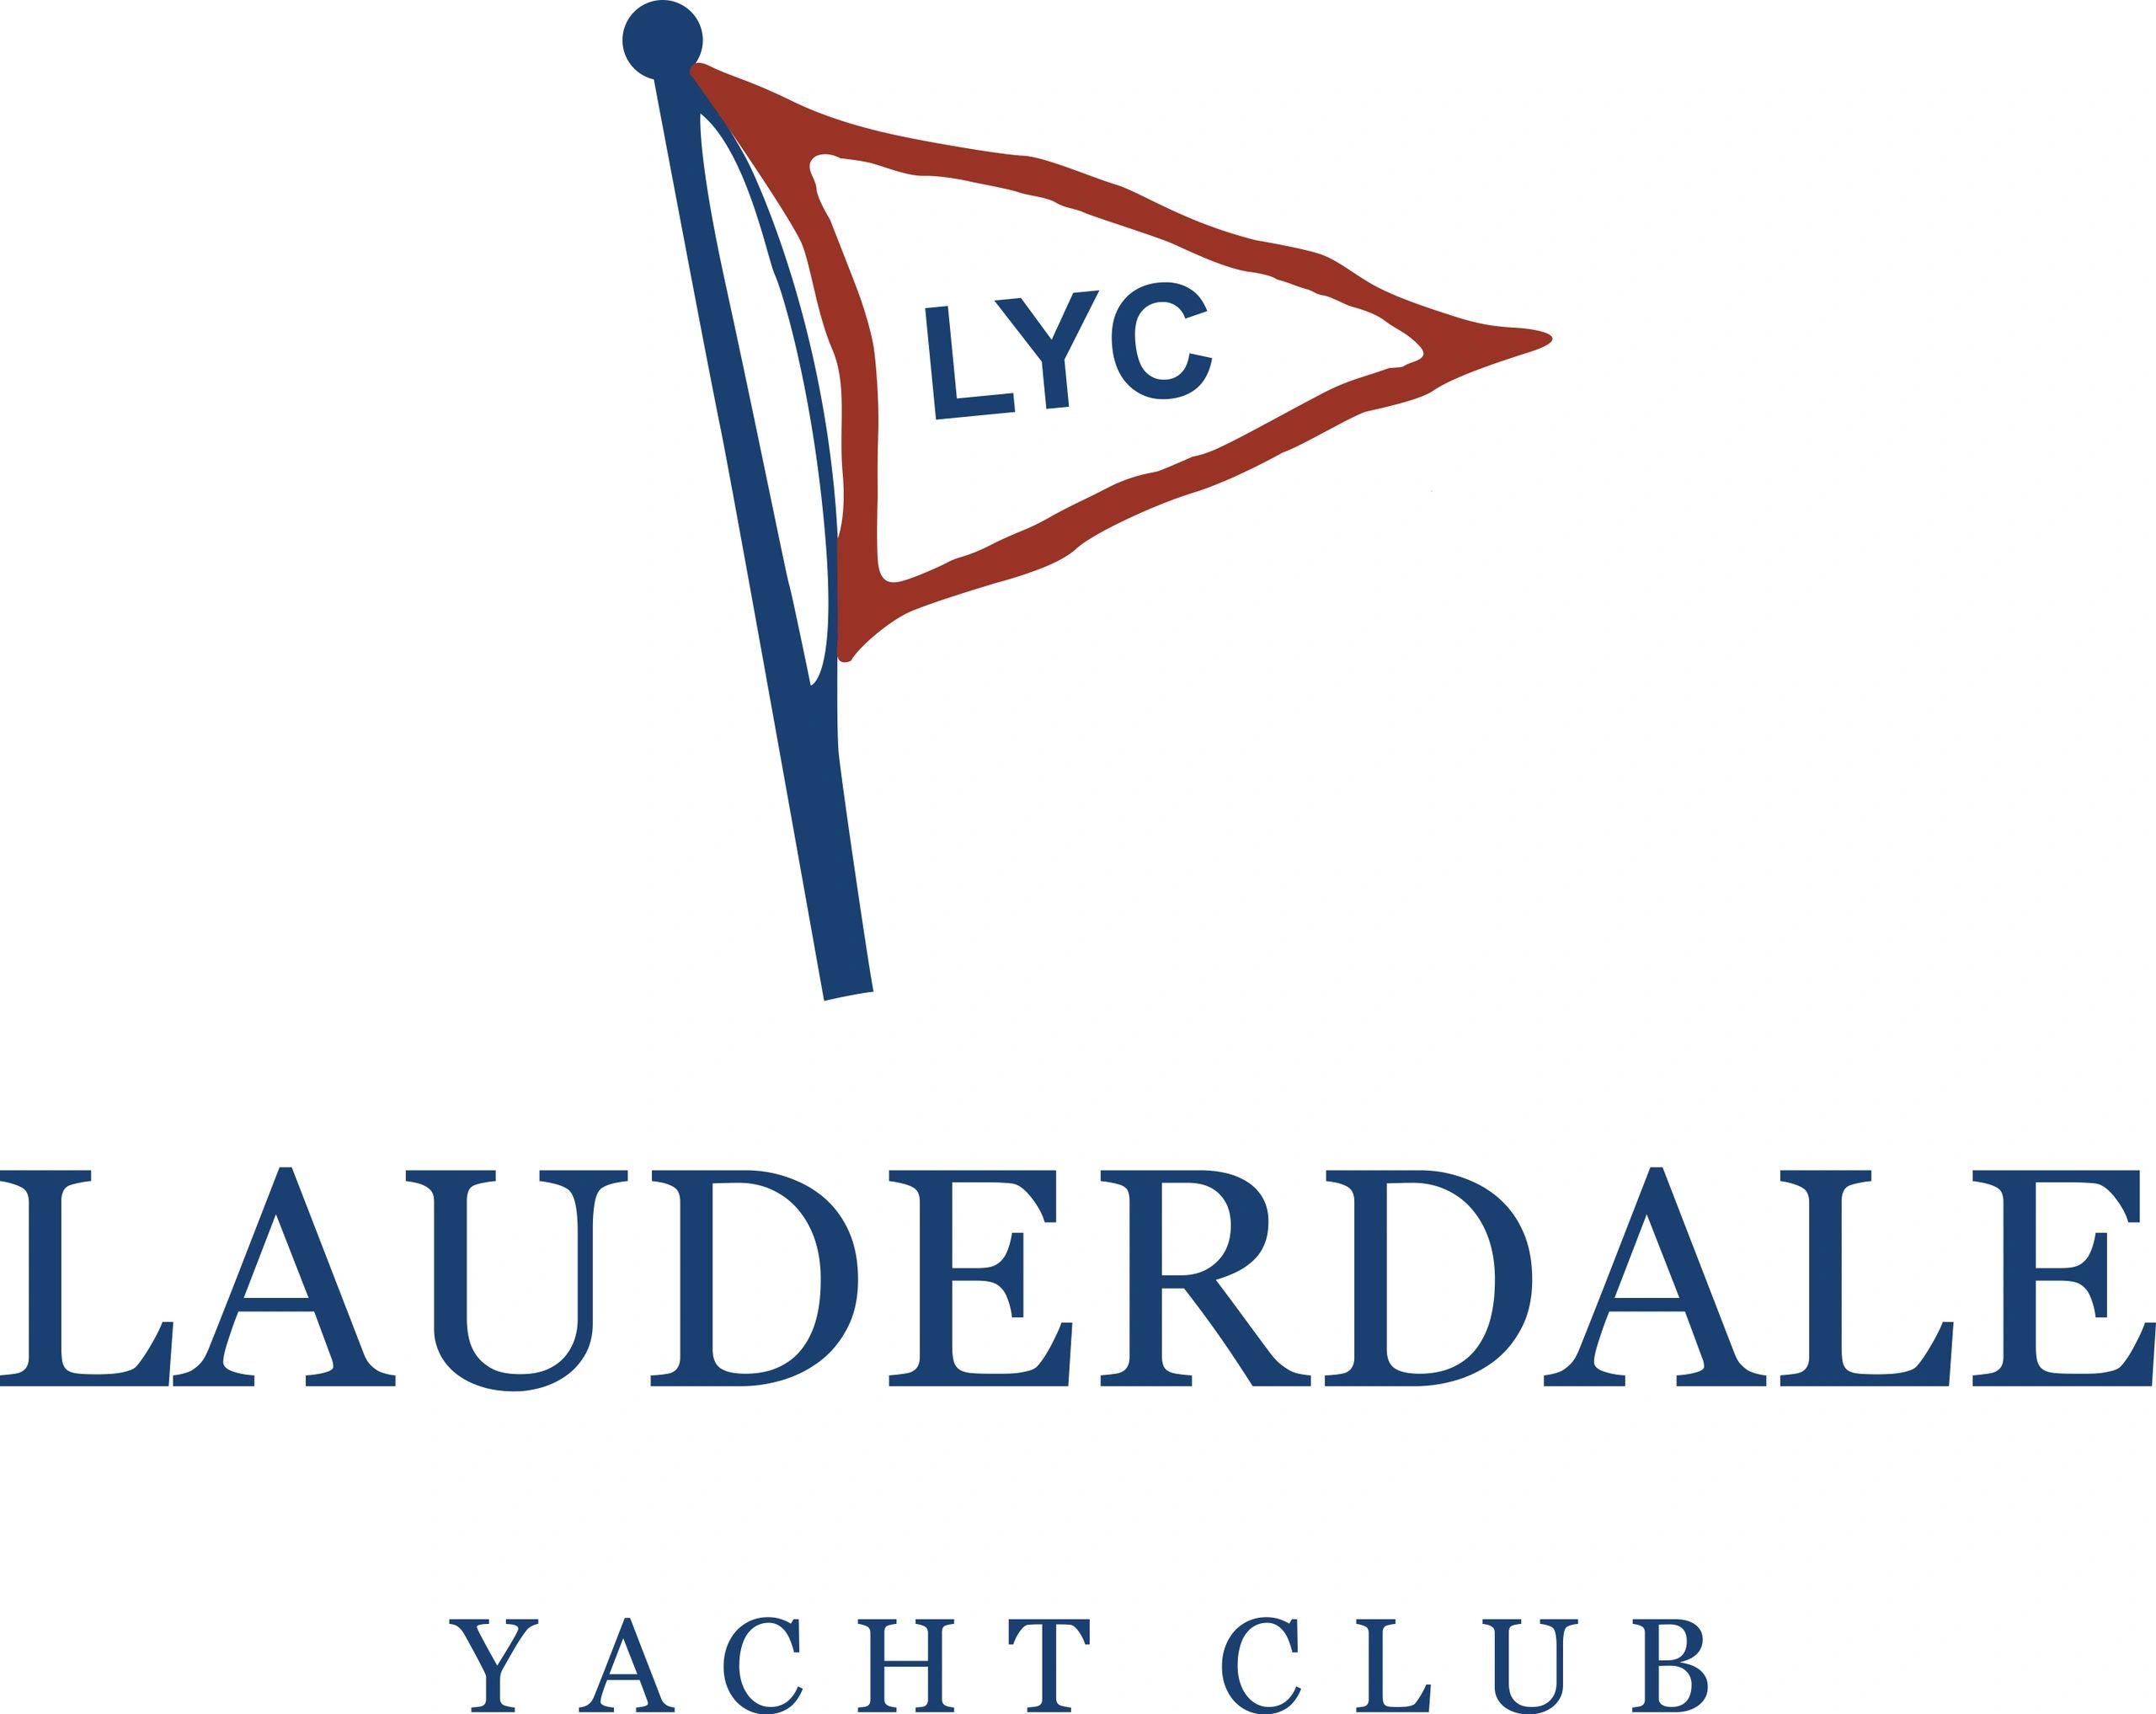 lauderdale yacht club staff